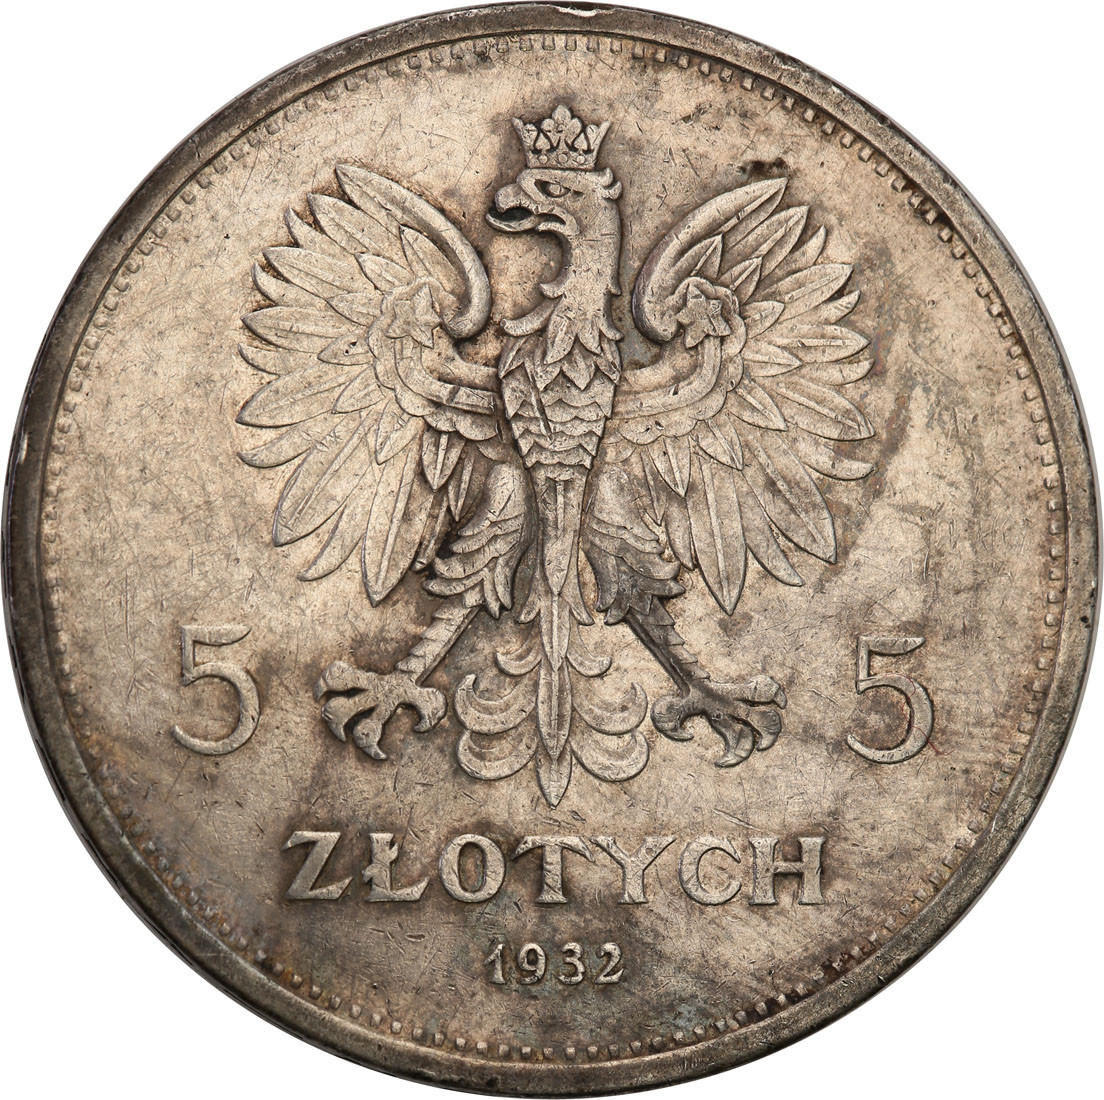 II RP. 5 złotych 1932 Nike NGC AU53 Najrzadsza moneta obiegowa II RP